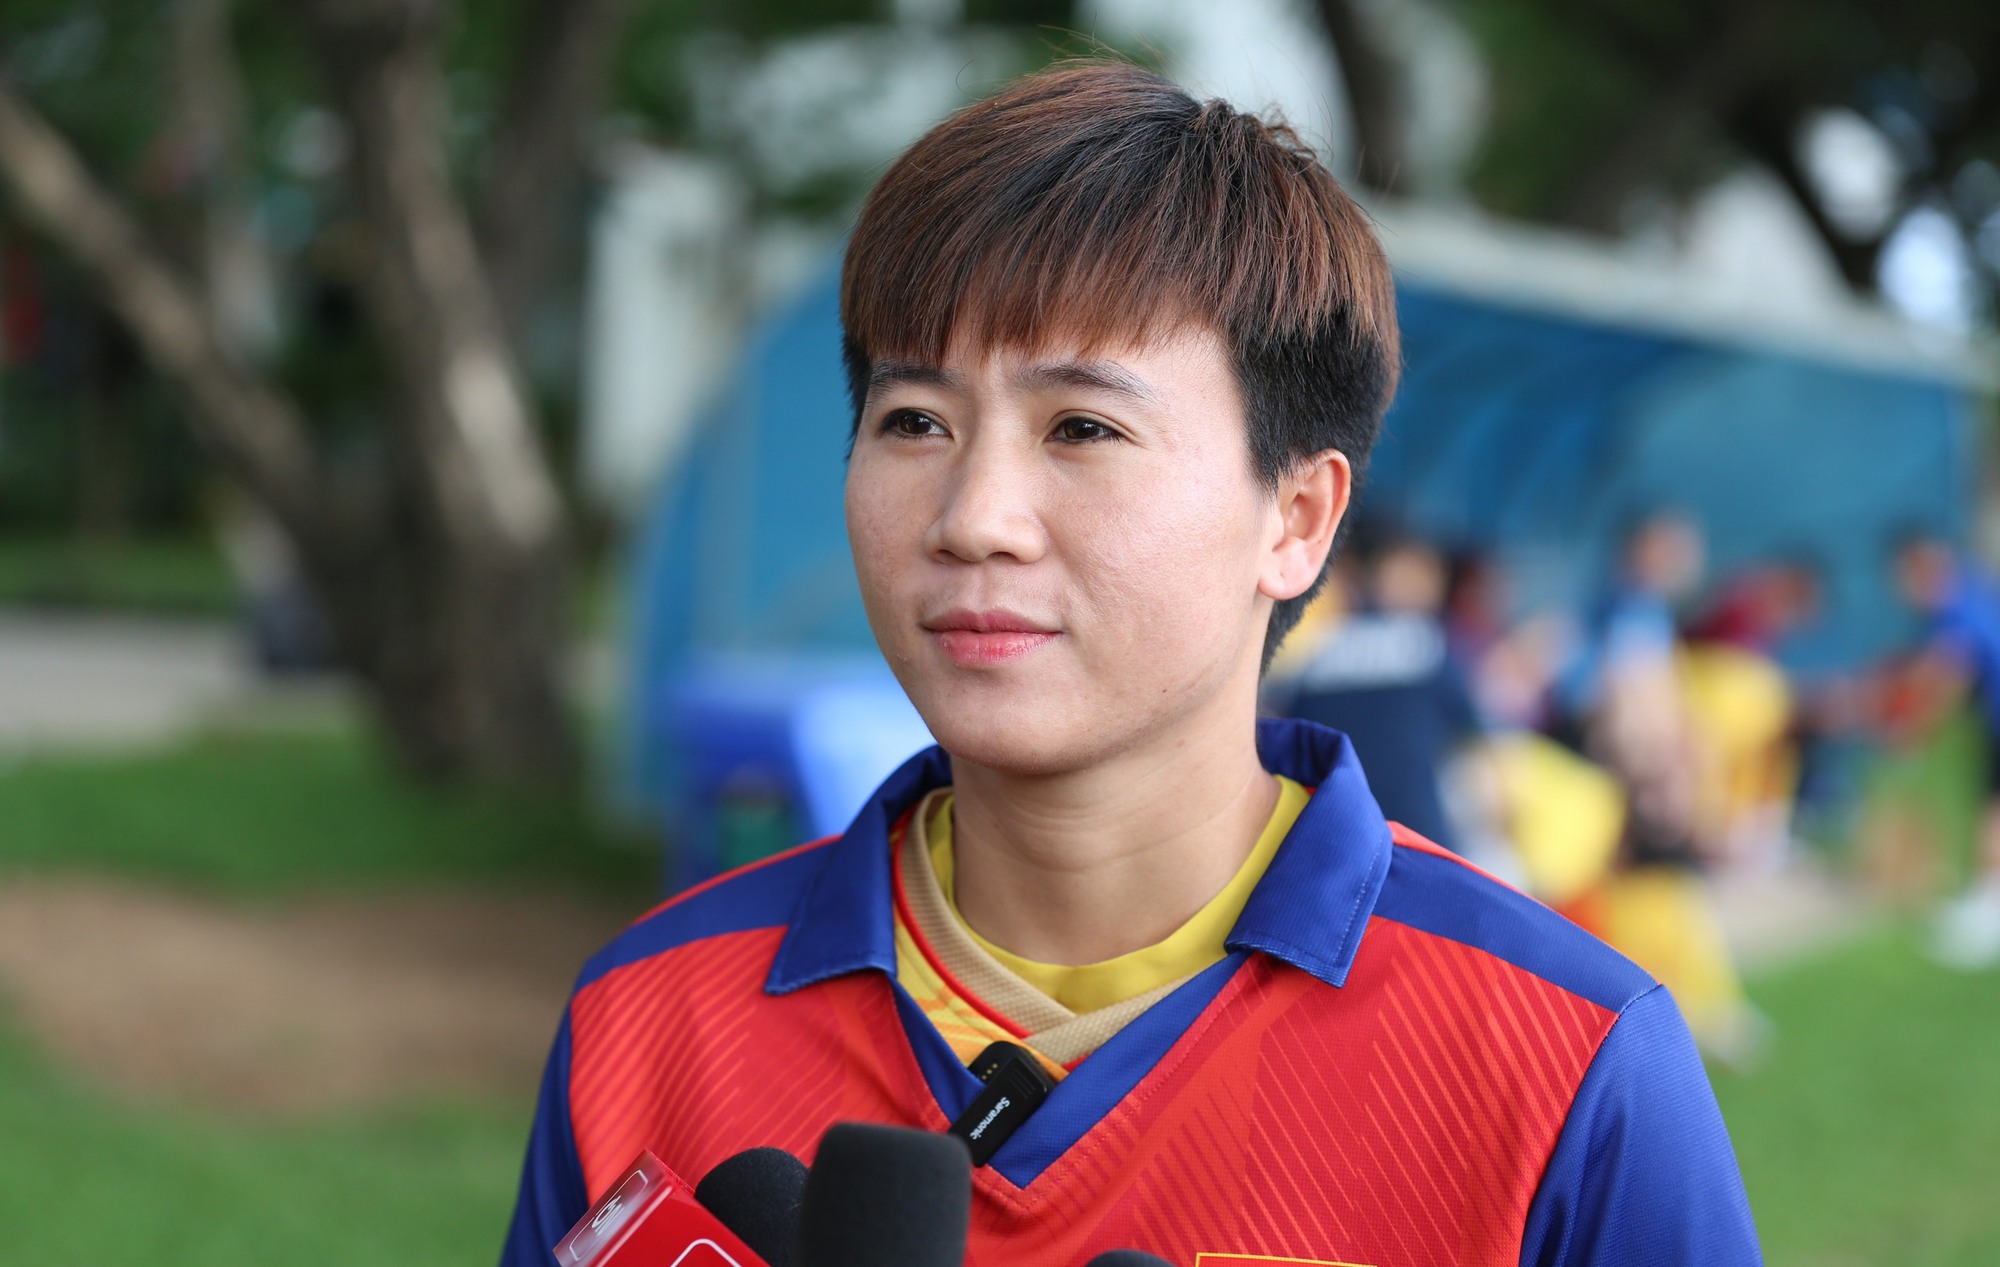 Tuyết Dung đặt mục tiêu ghi bàn trong trận chung kết cho tuyển nữ Việt Nam - Ảnh 1.